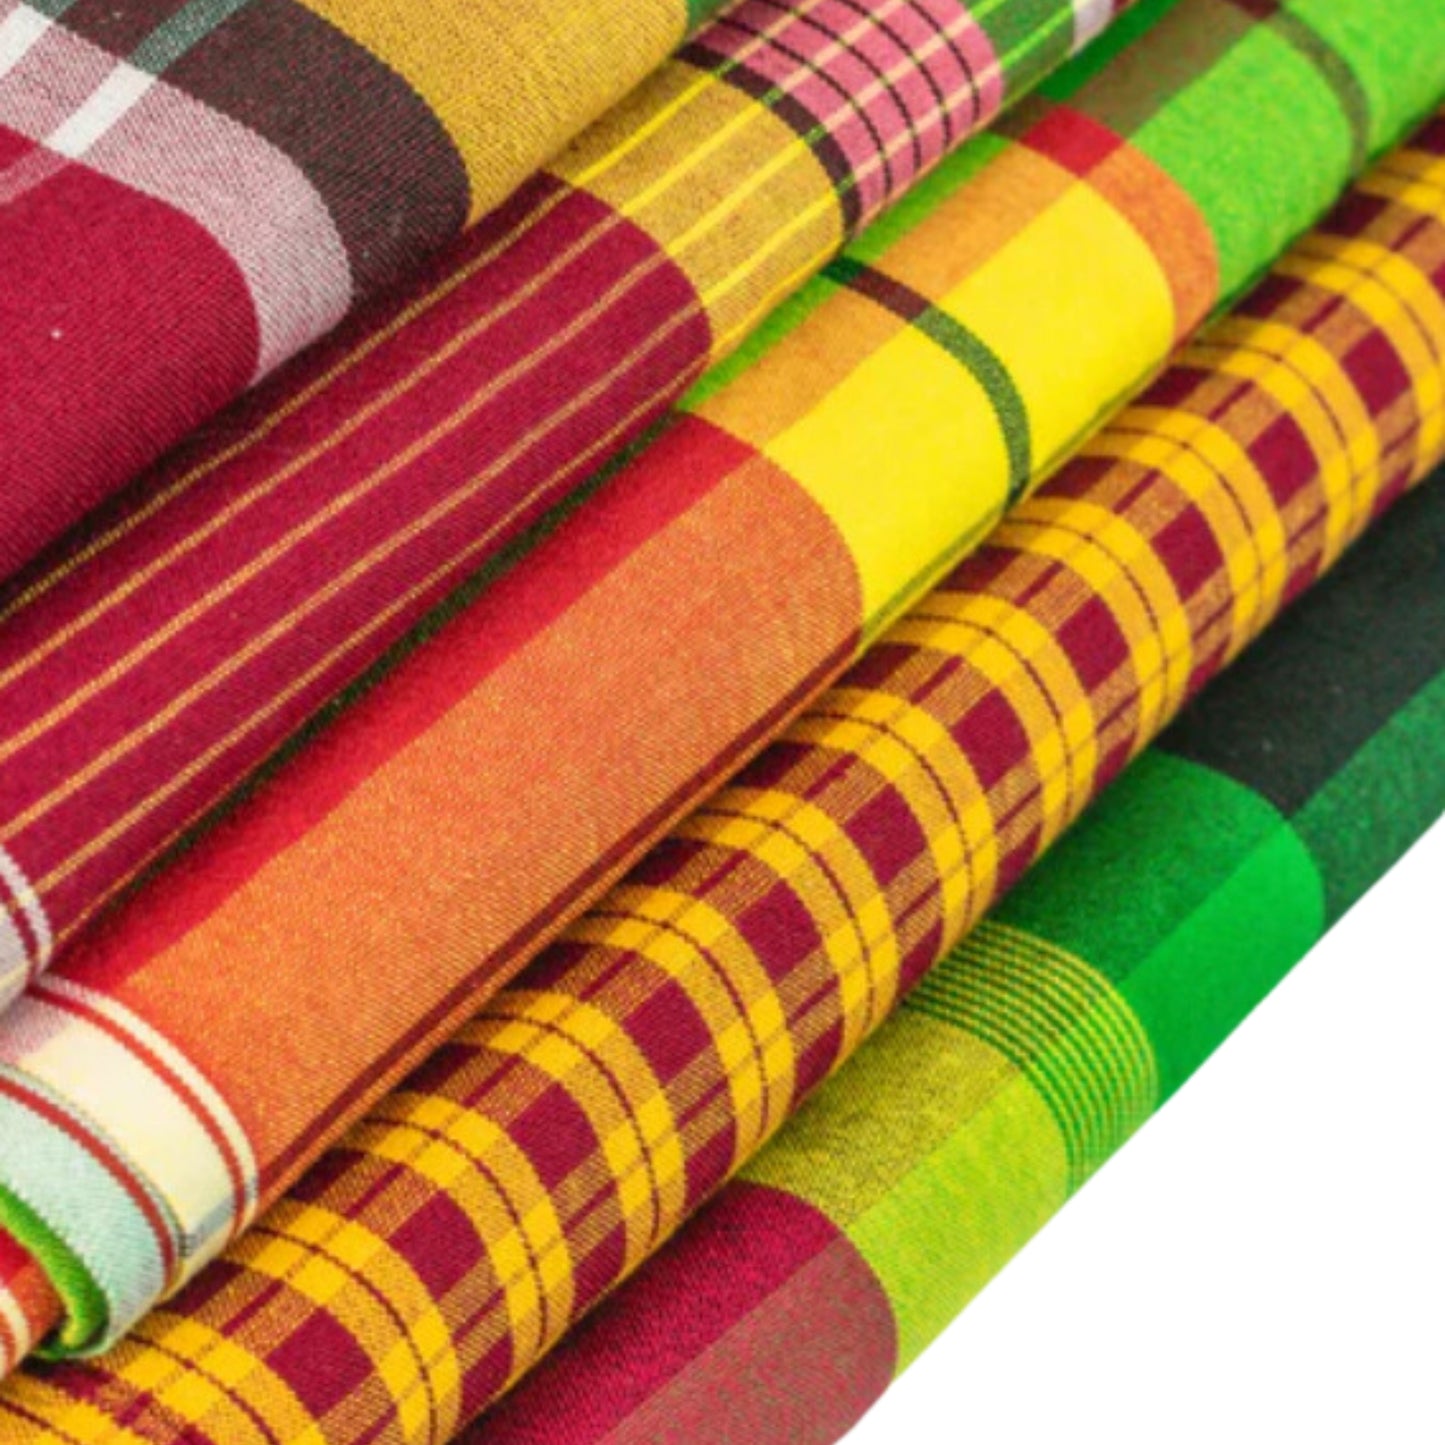 Hablon in Iloilo : Textile Meter Roll